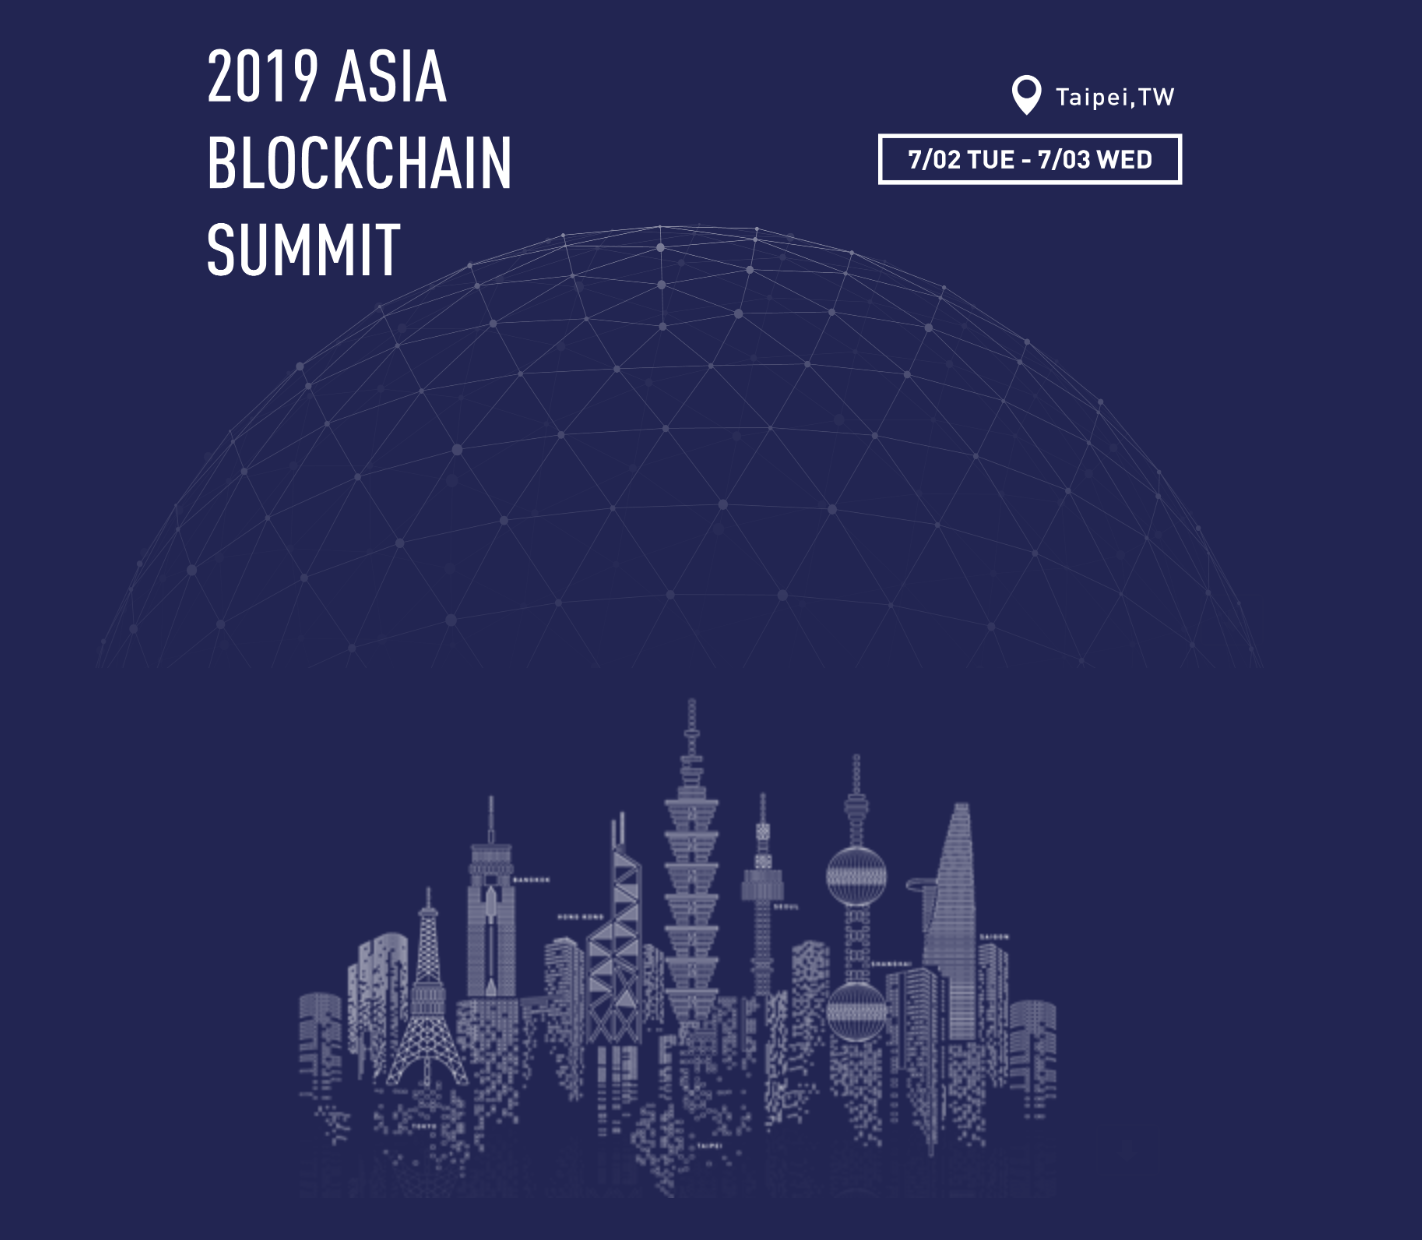 Asia Blockchain Summit on July 2&3 at Taipei Marriott